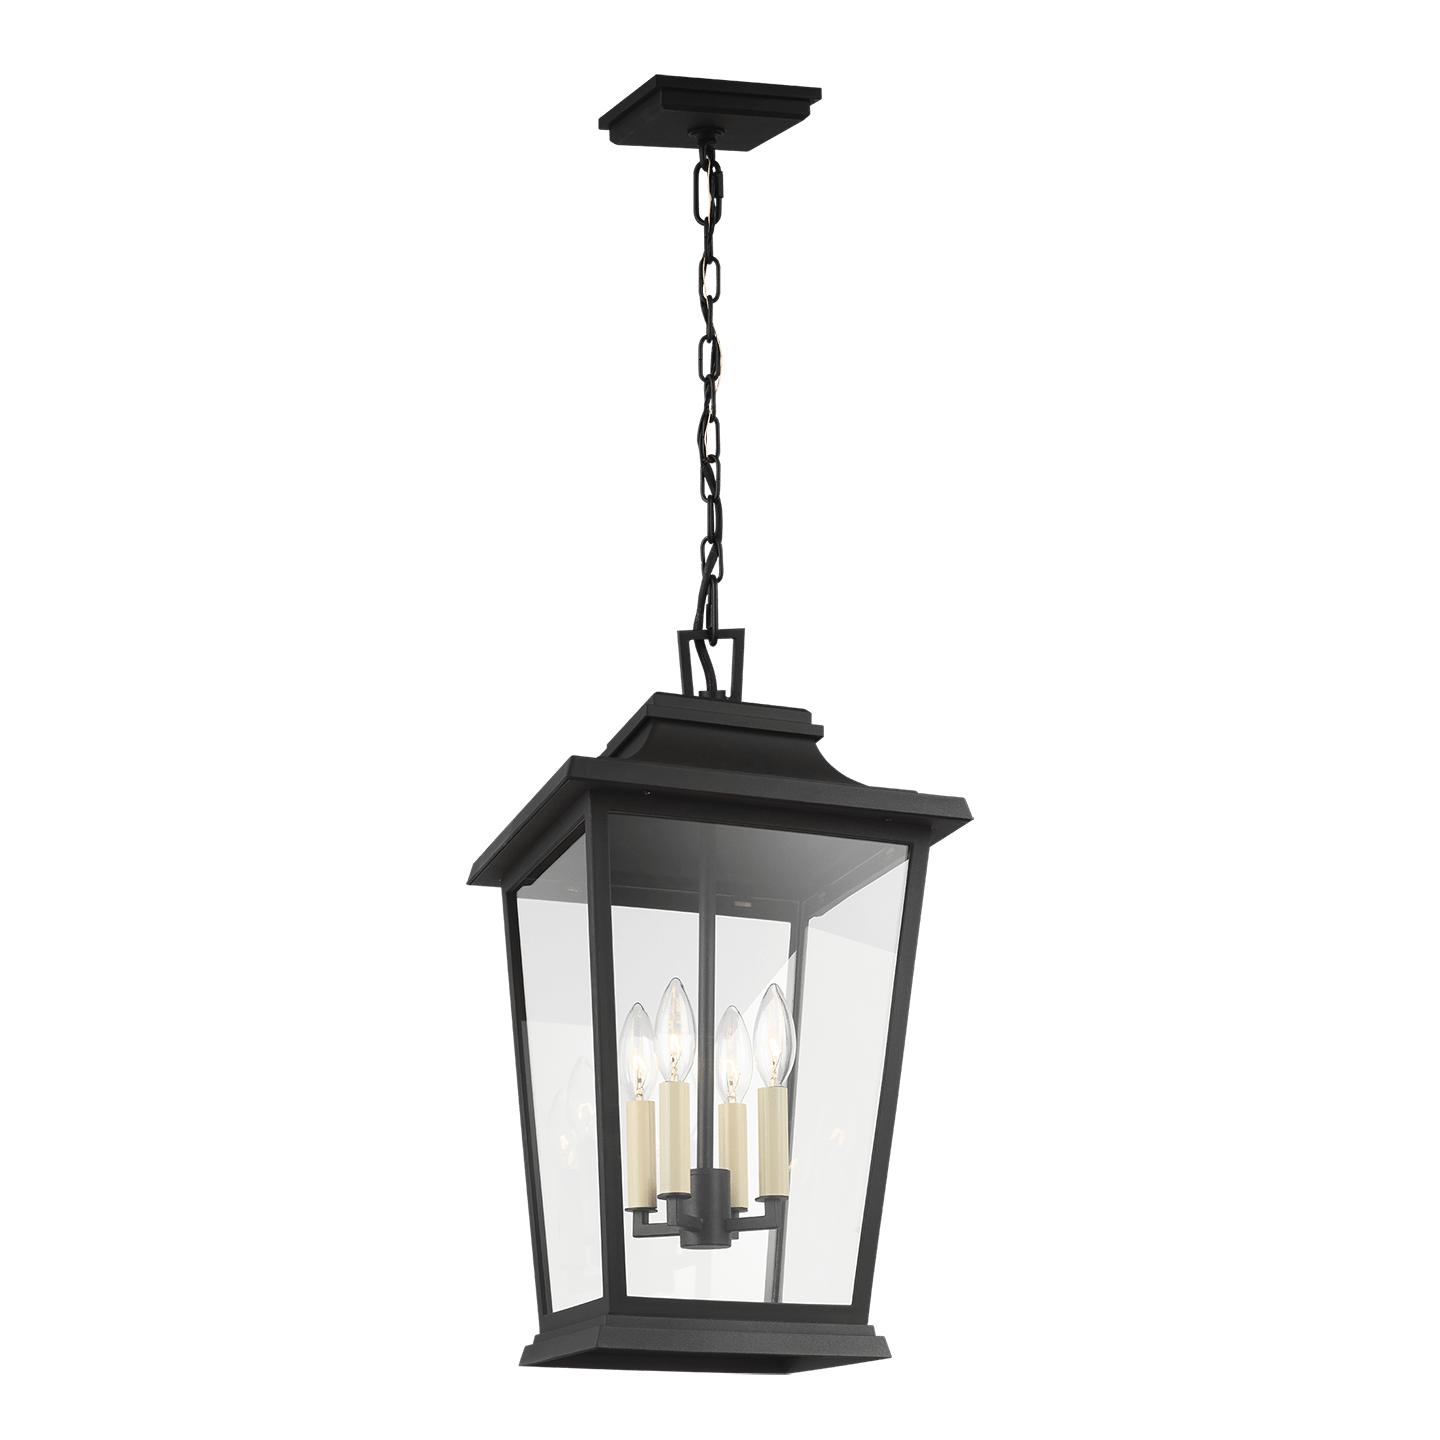 Купить Подвесной светильник Warren Hanging Lantern в интернет-магазине roooms.ru